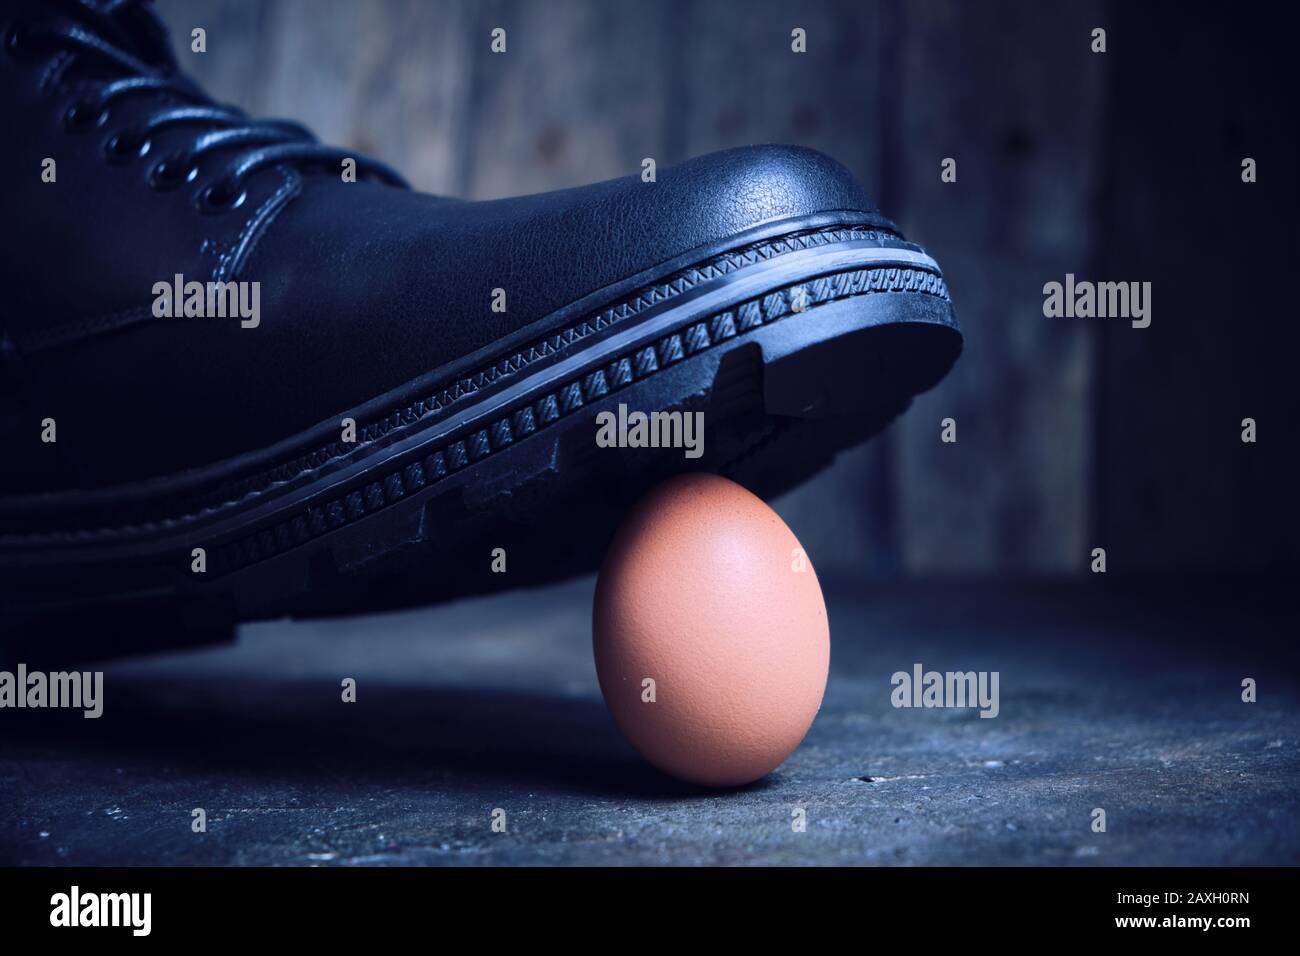 Schwarzer Stiefel tritt auf ein zerbrechliches Hühnerei. Das Konzept, der  schwache wehrlose Stockfotografie - Alamy